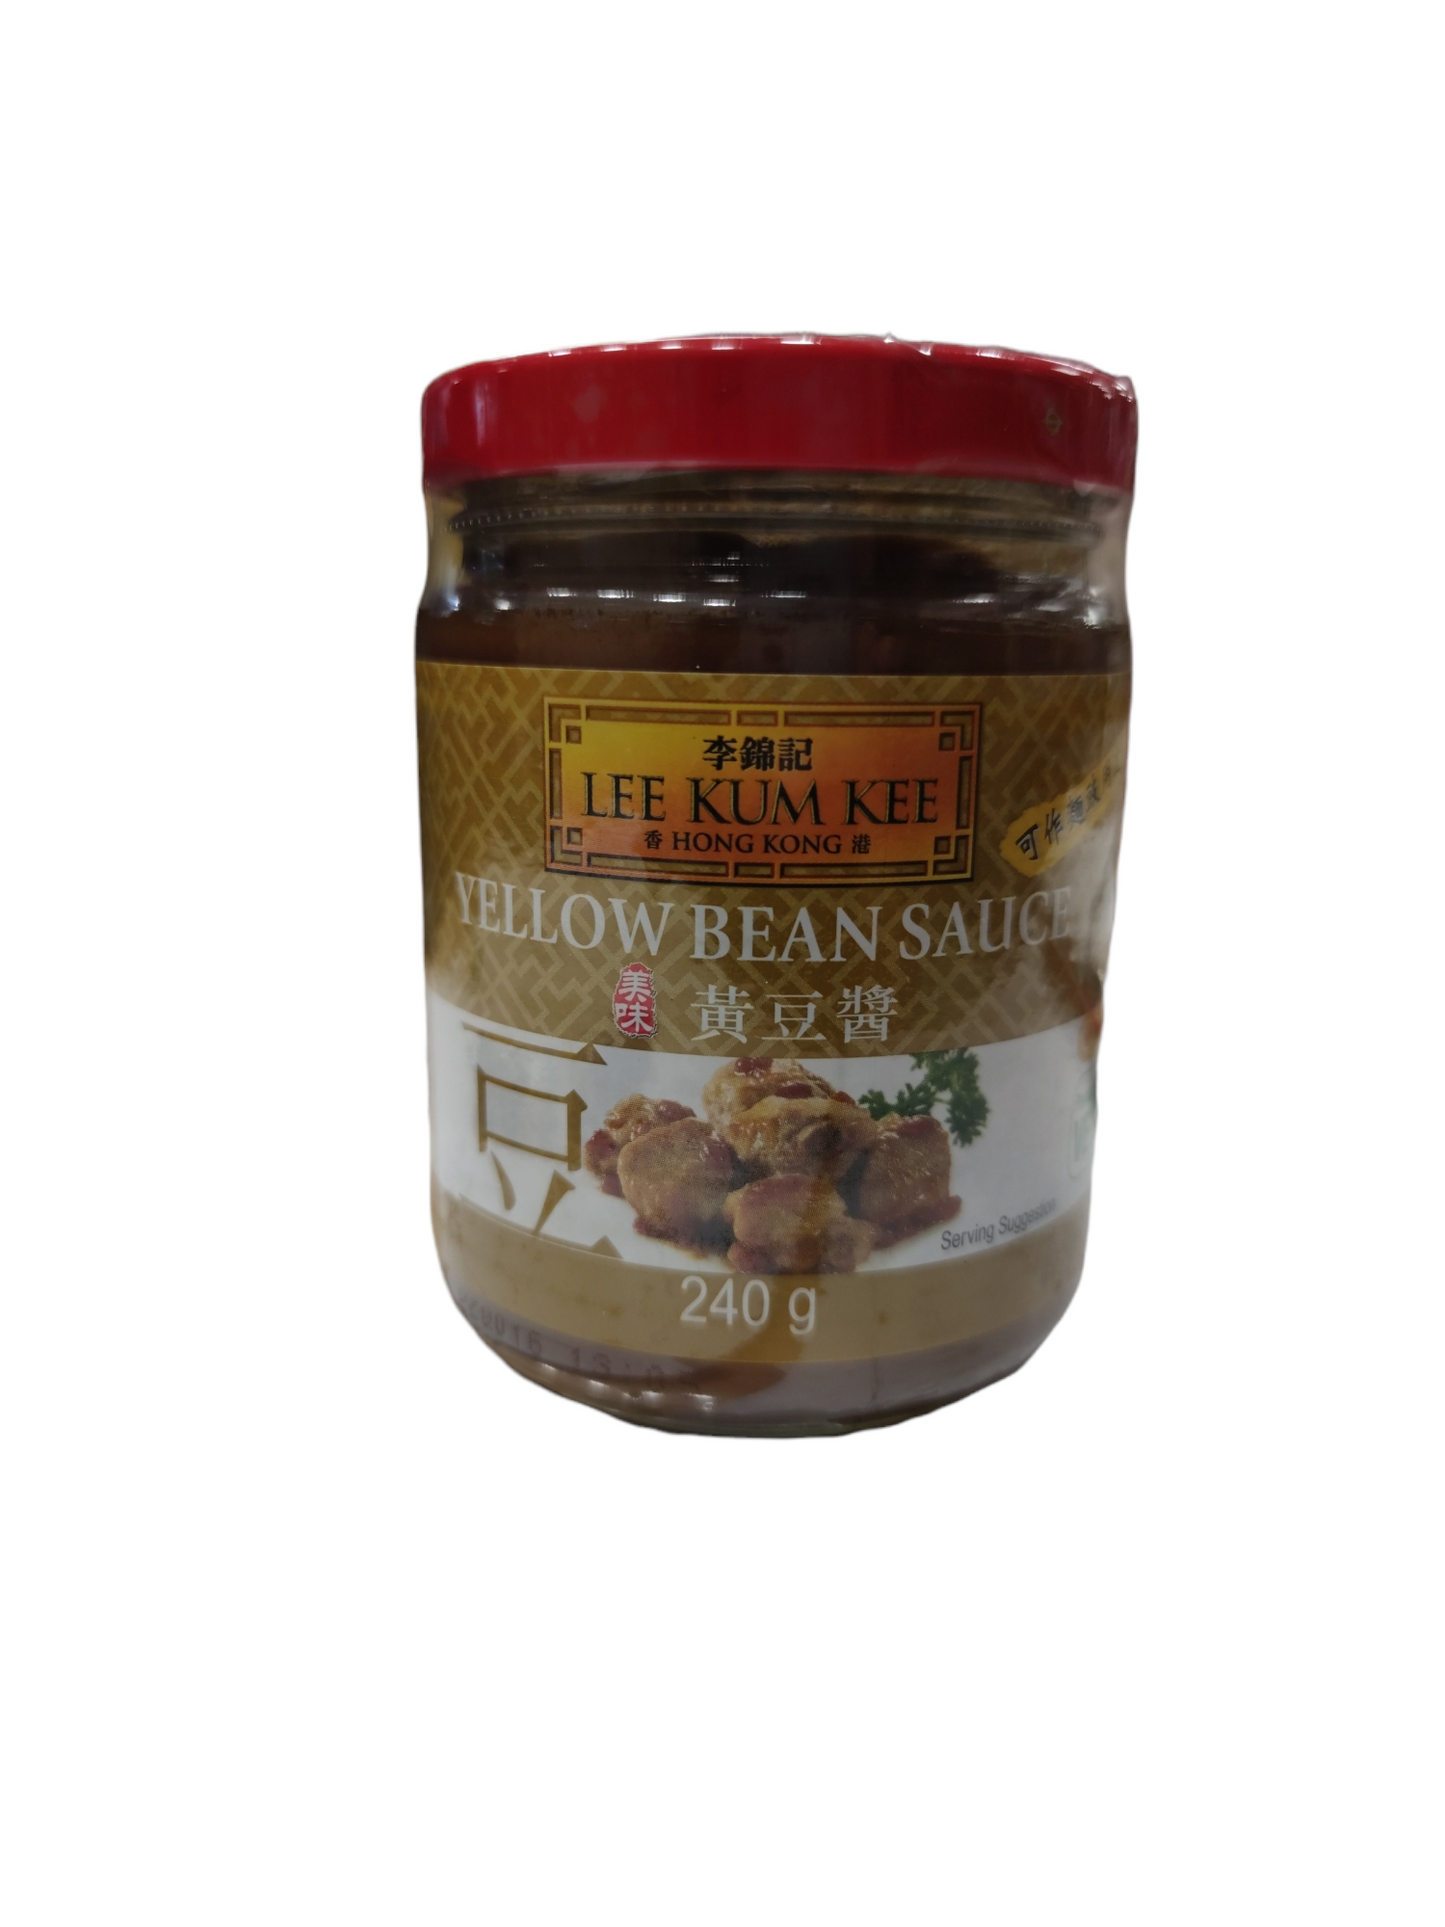 LKK Soy Bean Sauce 240g 李錦記黃豆醬